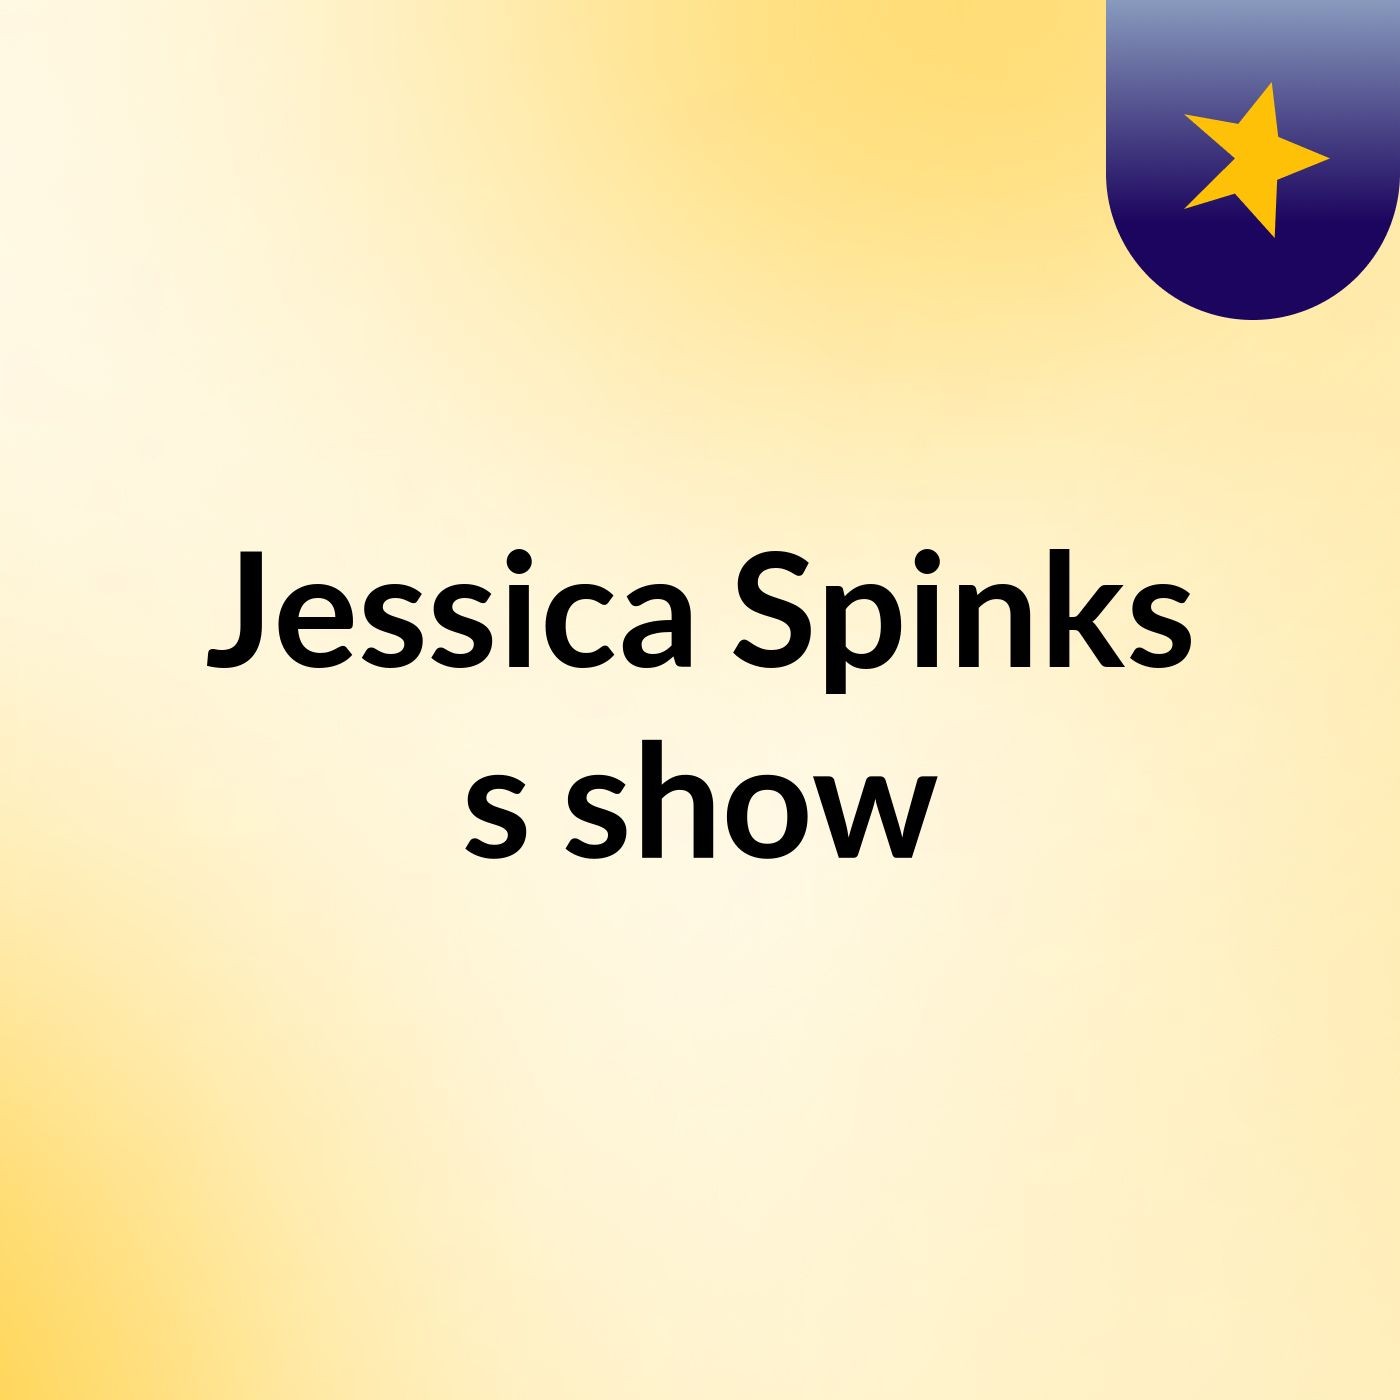 Jessica Spinks's show